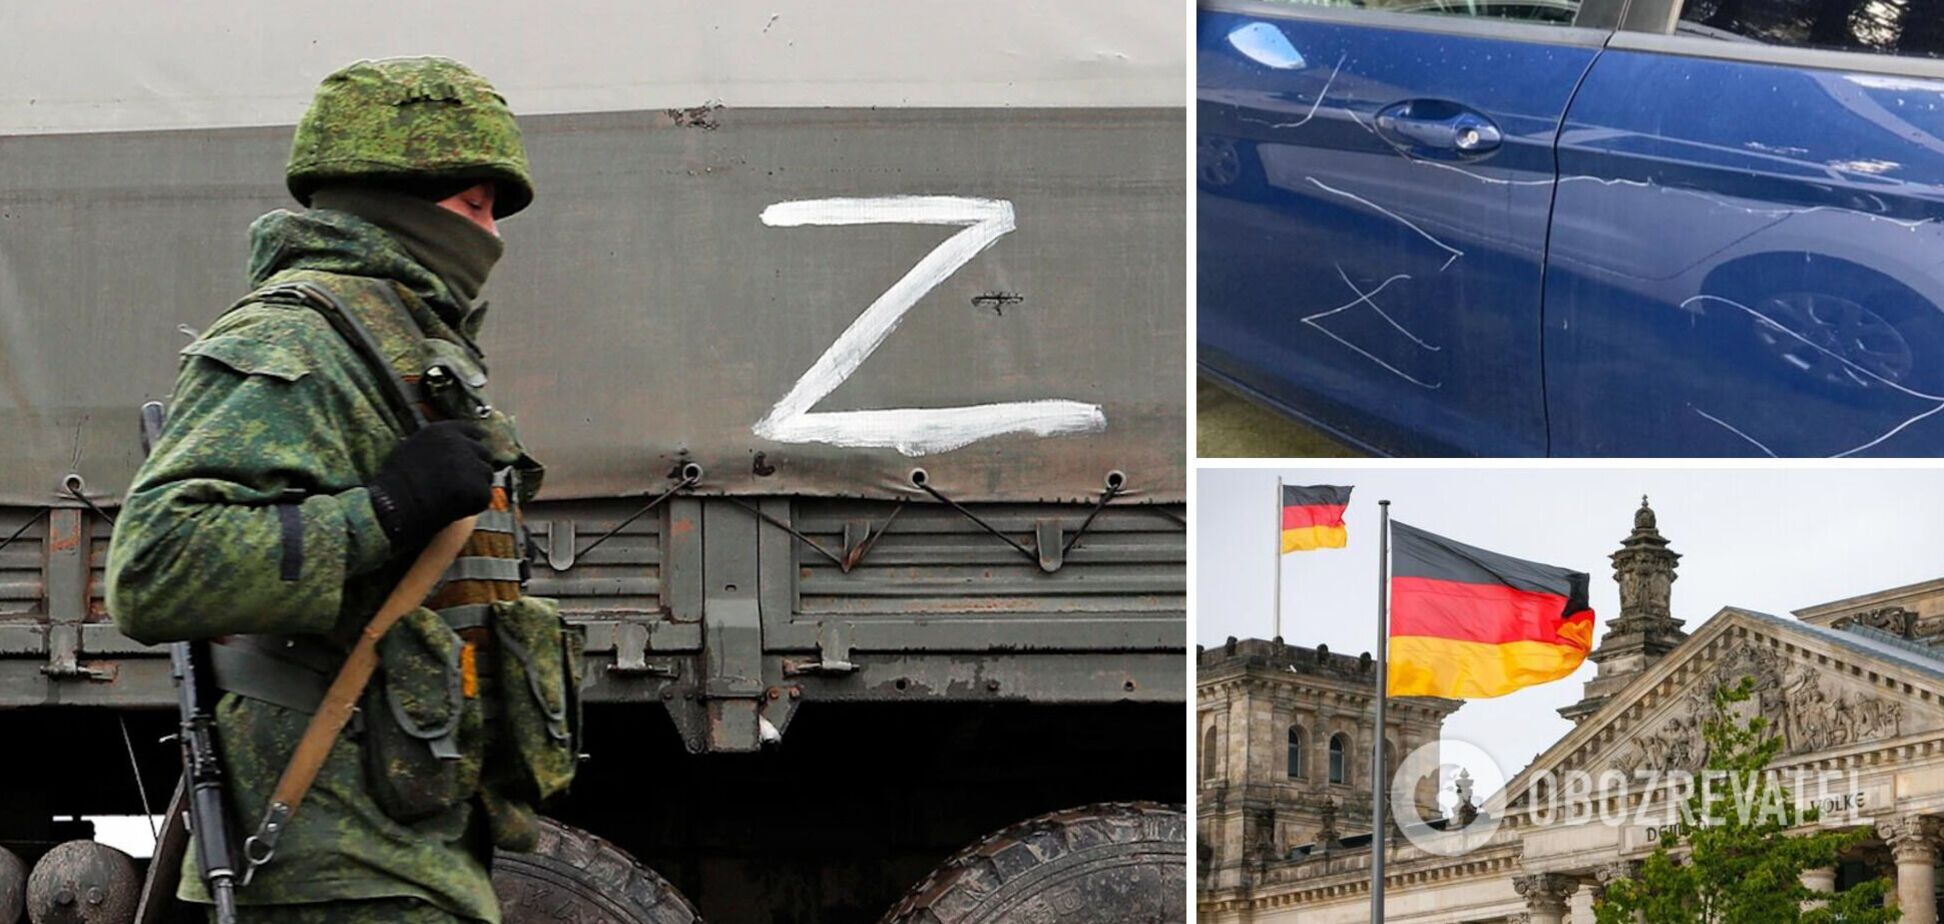 В Германии на автомобиле украинки выцарапали символы Z: перед этим были странные разговоры с двумя мужчинами